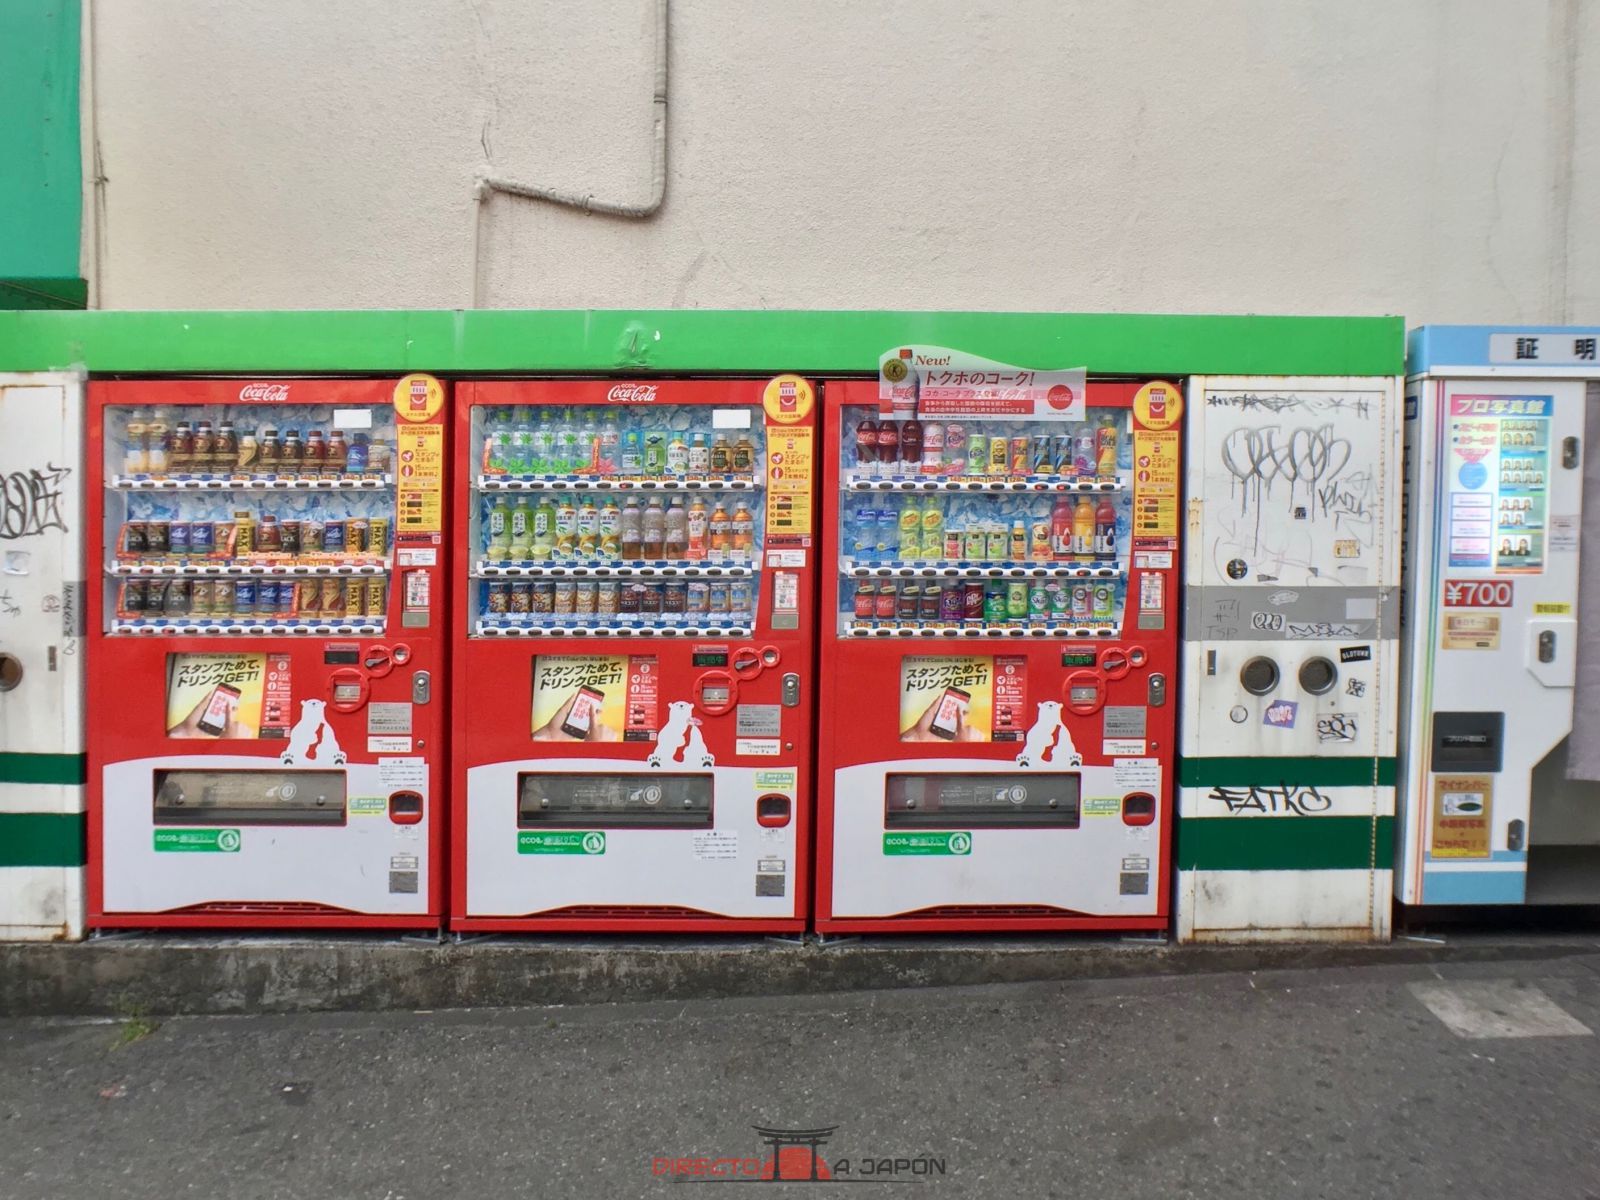 Vending machines en la Estación de Jimbocho, Tokio